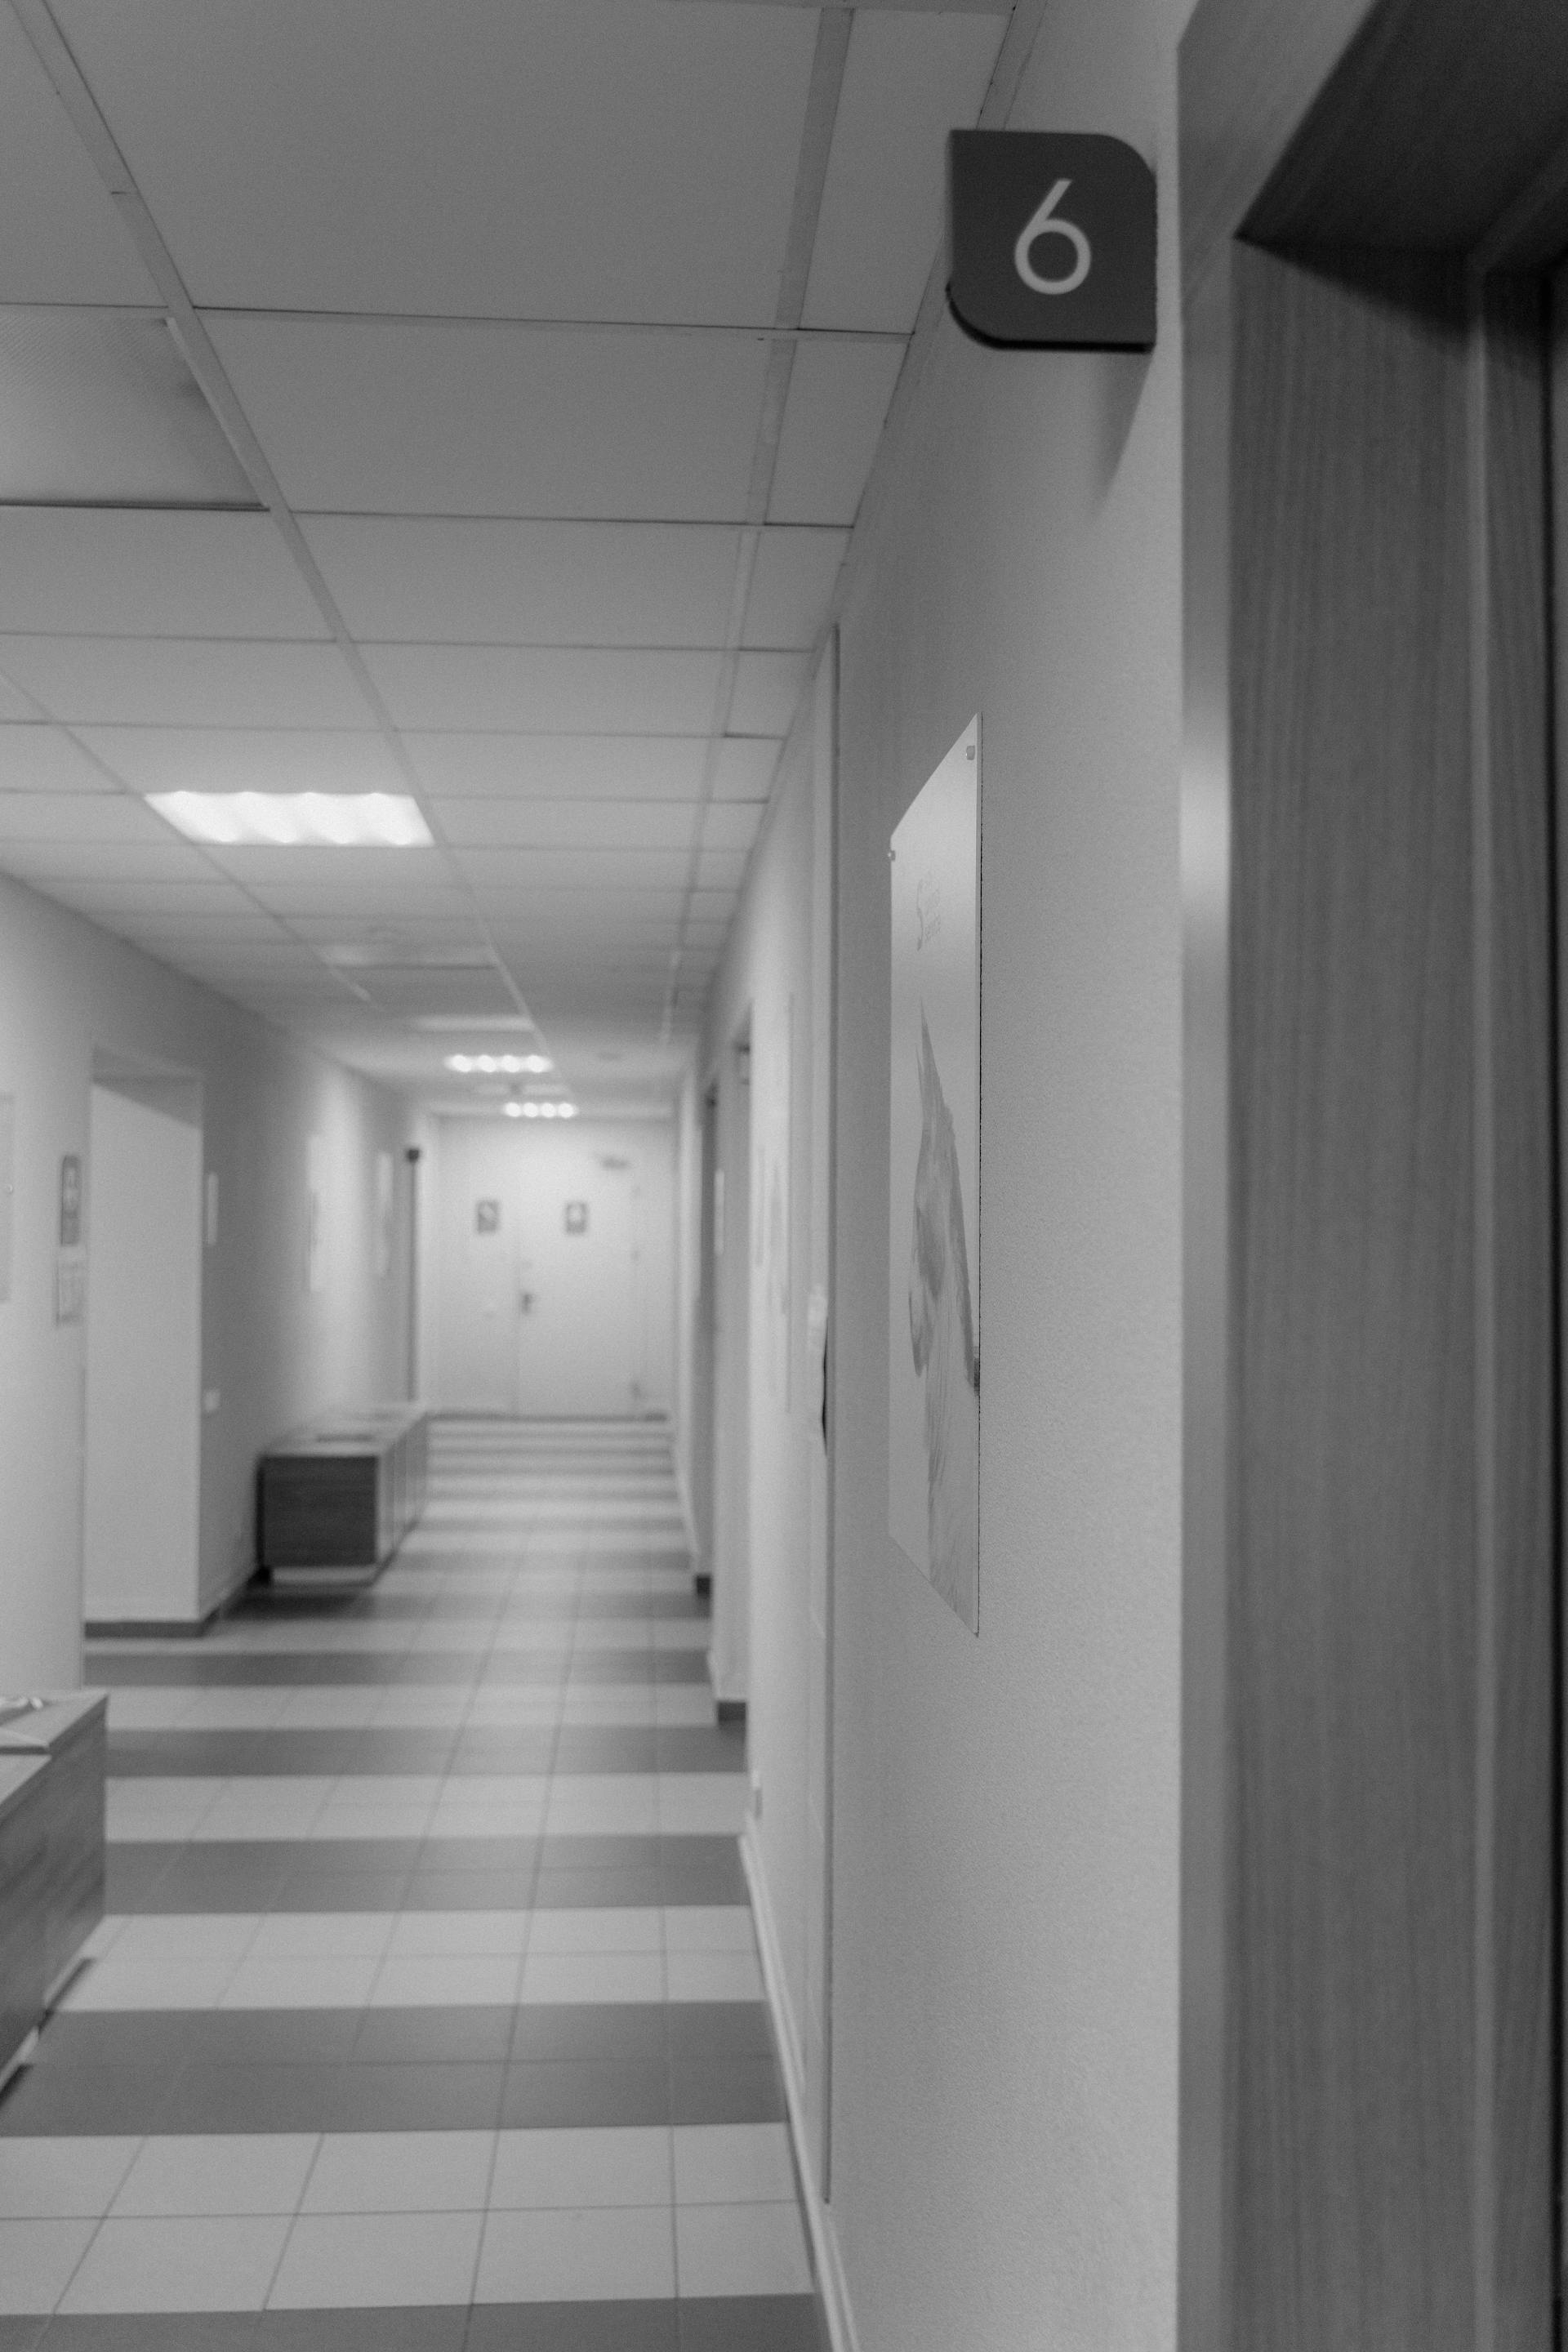 An empty hospital hallway | Source: Pexels